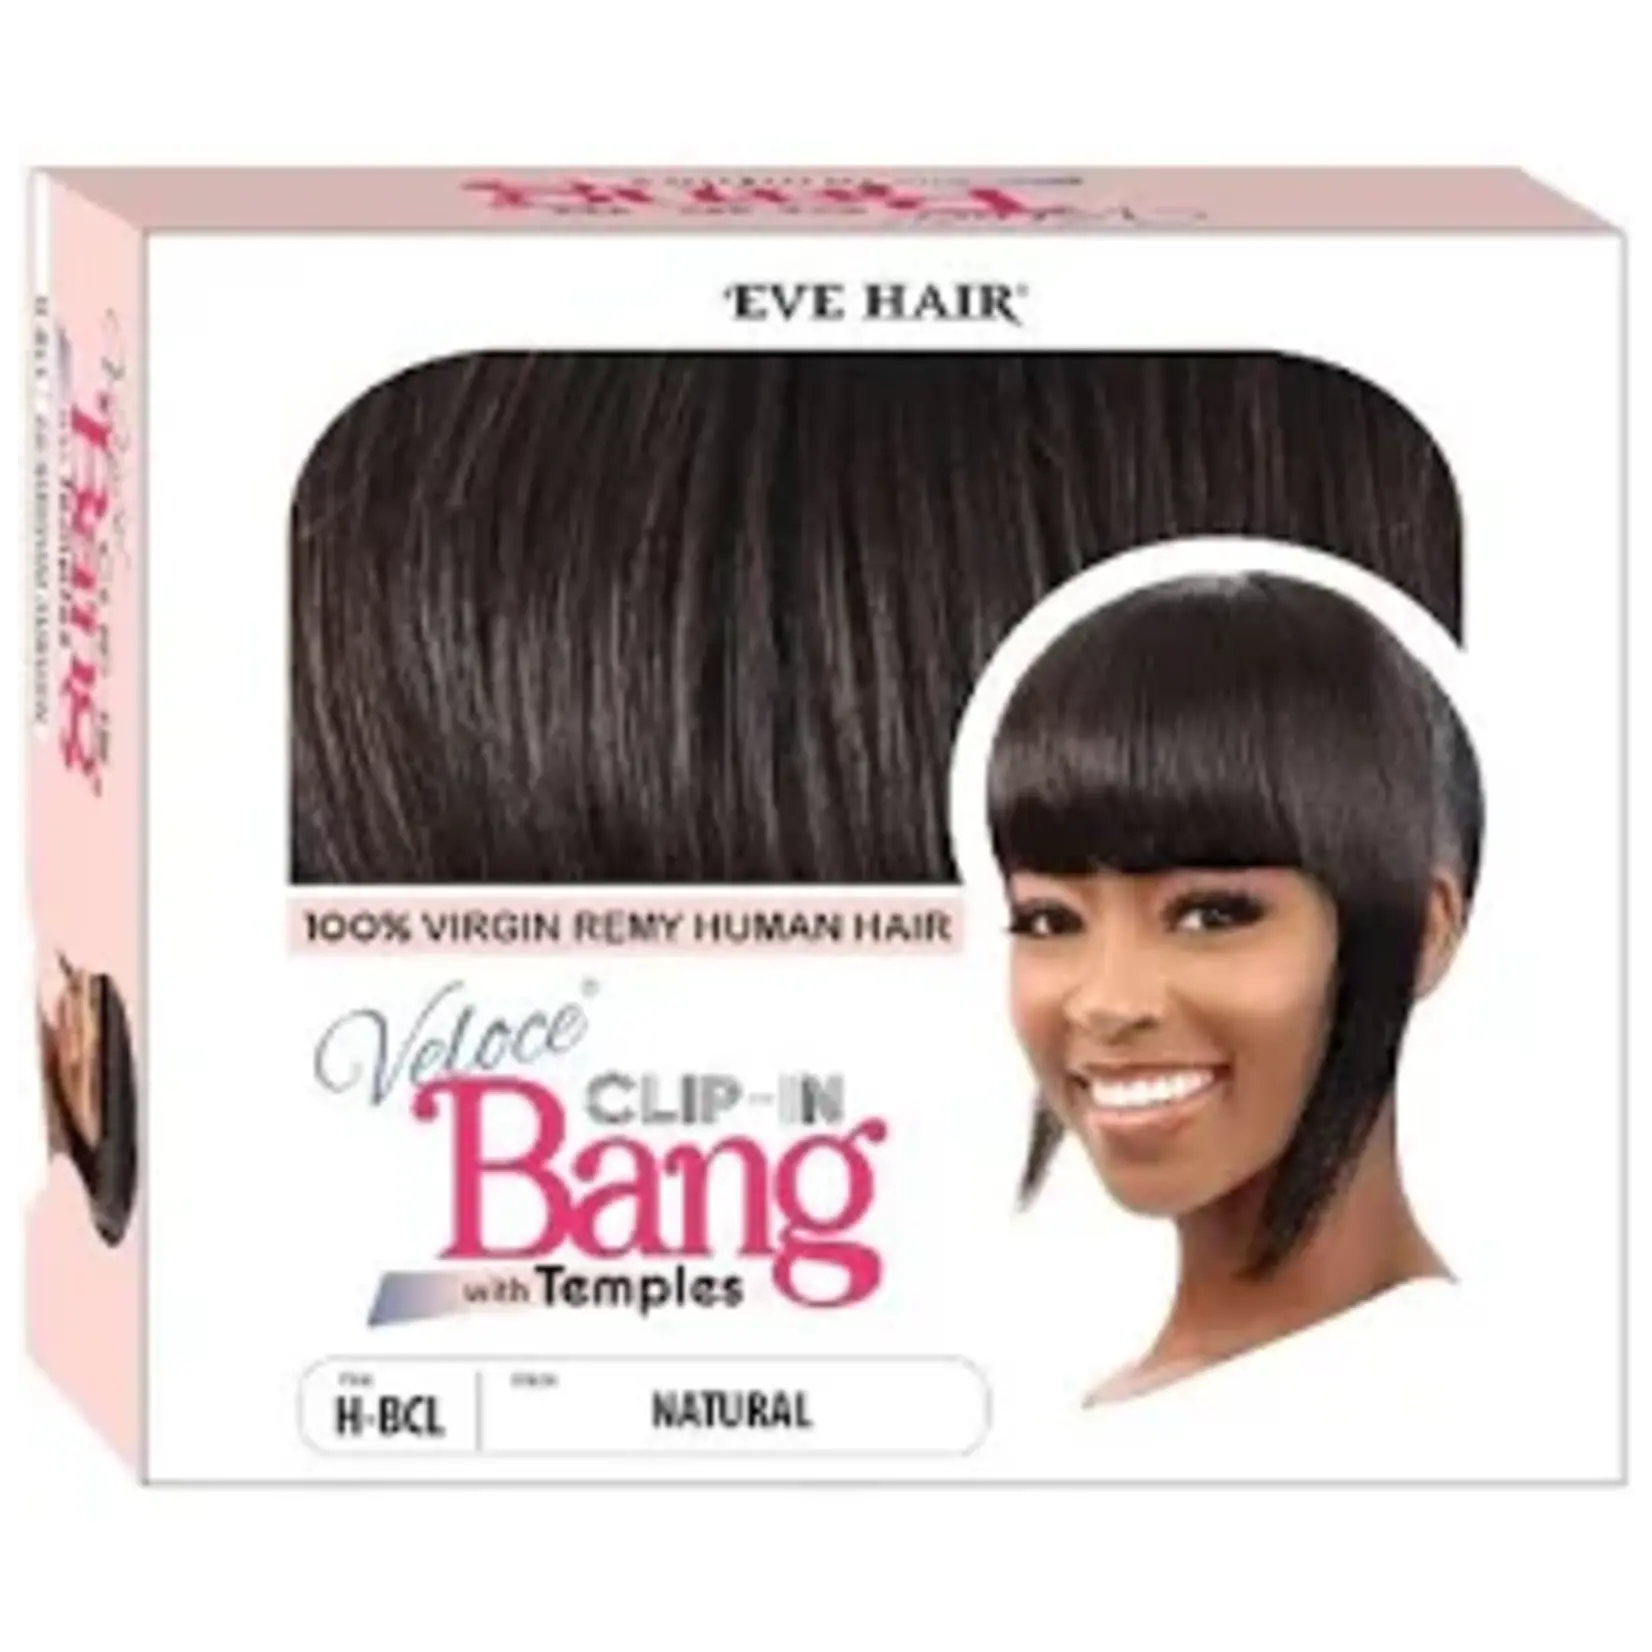 EVE'S HAIR Human Hair Clip-in Bang - Natural